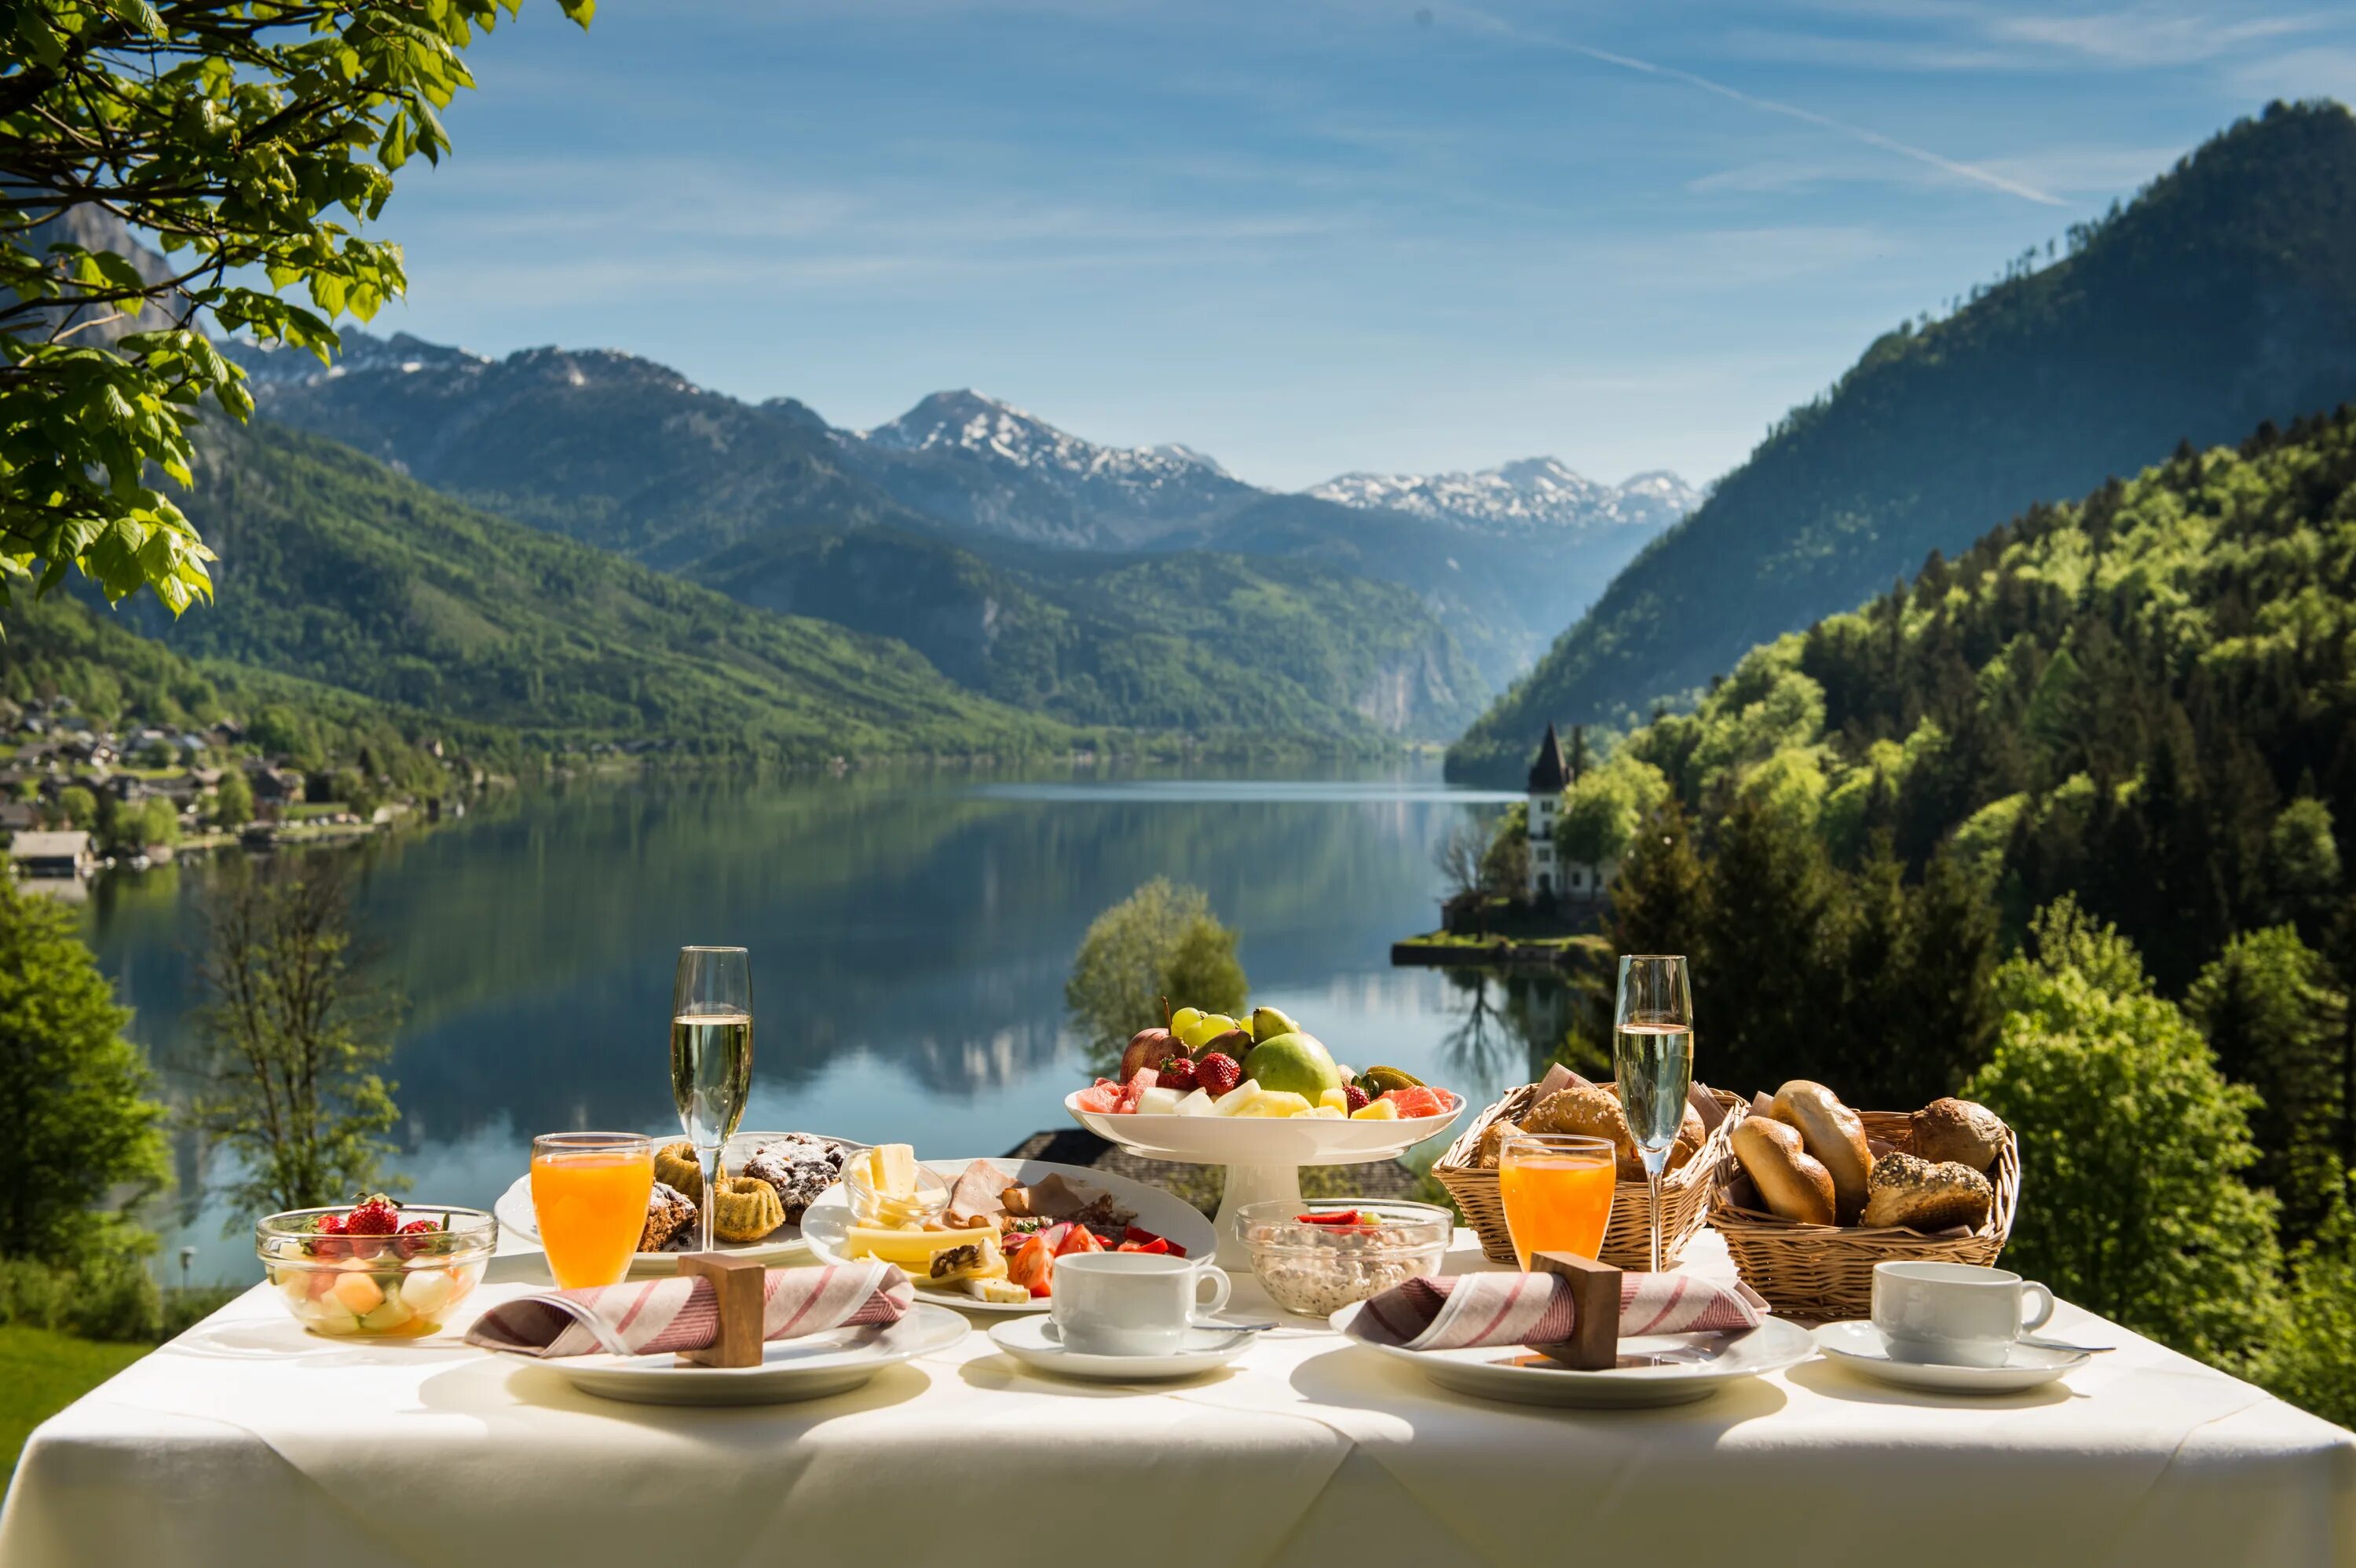 Картинки с добрым утром город. Завтрак на природе. Роскошный завтрак. Красивый завтрак с видом. Утро в горах.